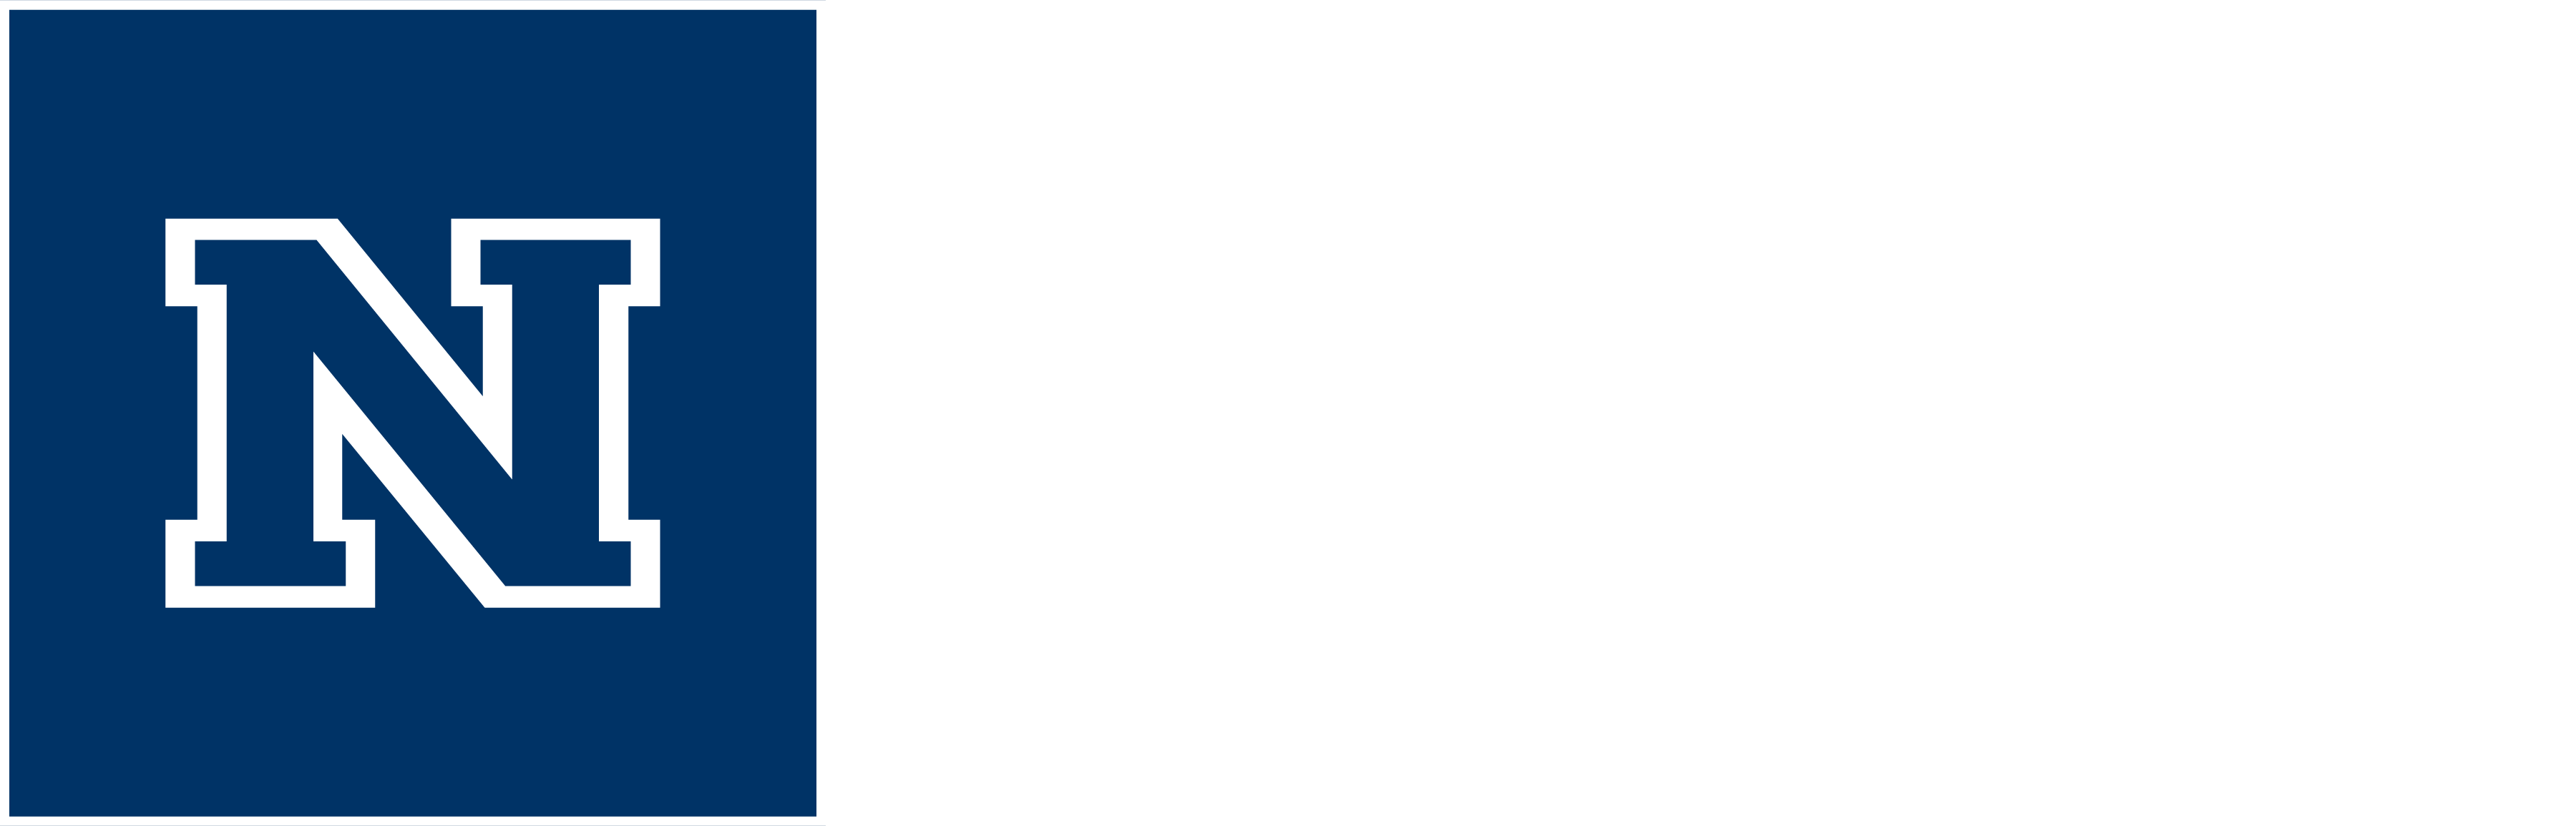 UNR Logo - Downloading Logos